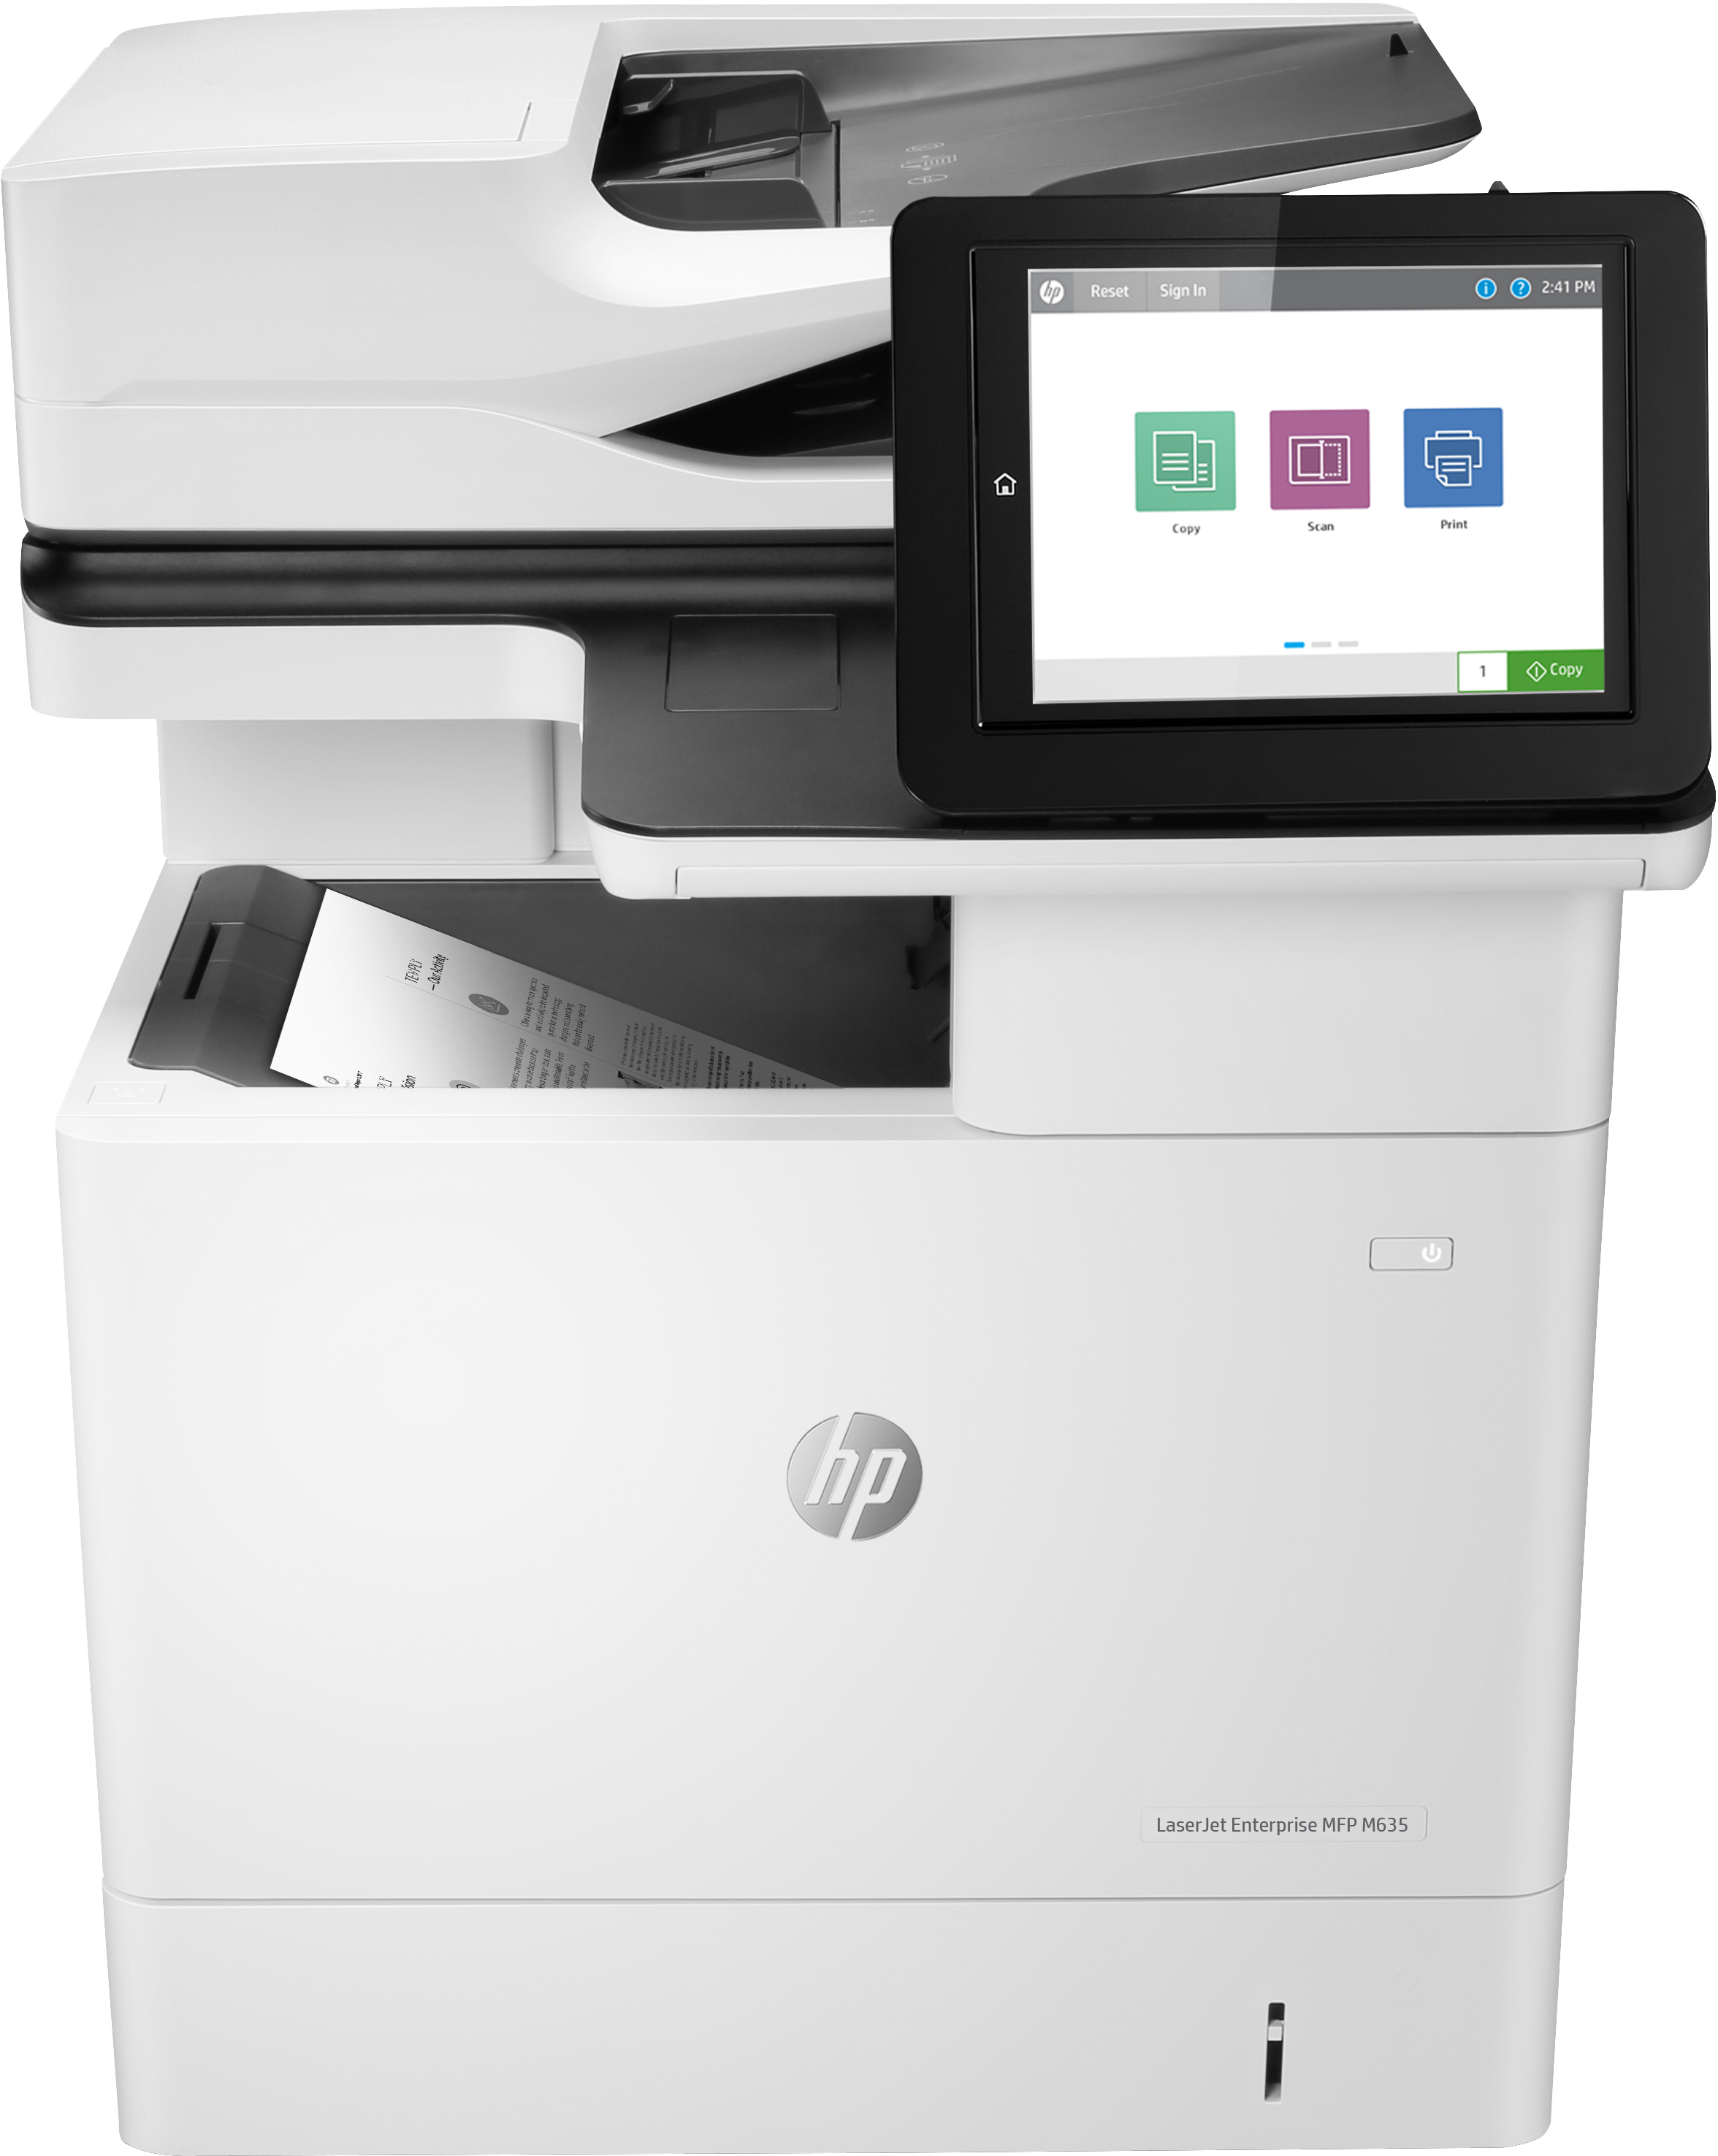 HP LaserJet Enterprise HP LaserJet Enterprise MFP M635h, Printen, kopiëren, scannen en optioneel faxen, Scannen naar e-mail; Dubbelzijdig printen; Automatische invoer voor 150 vellen; Energiezuinig